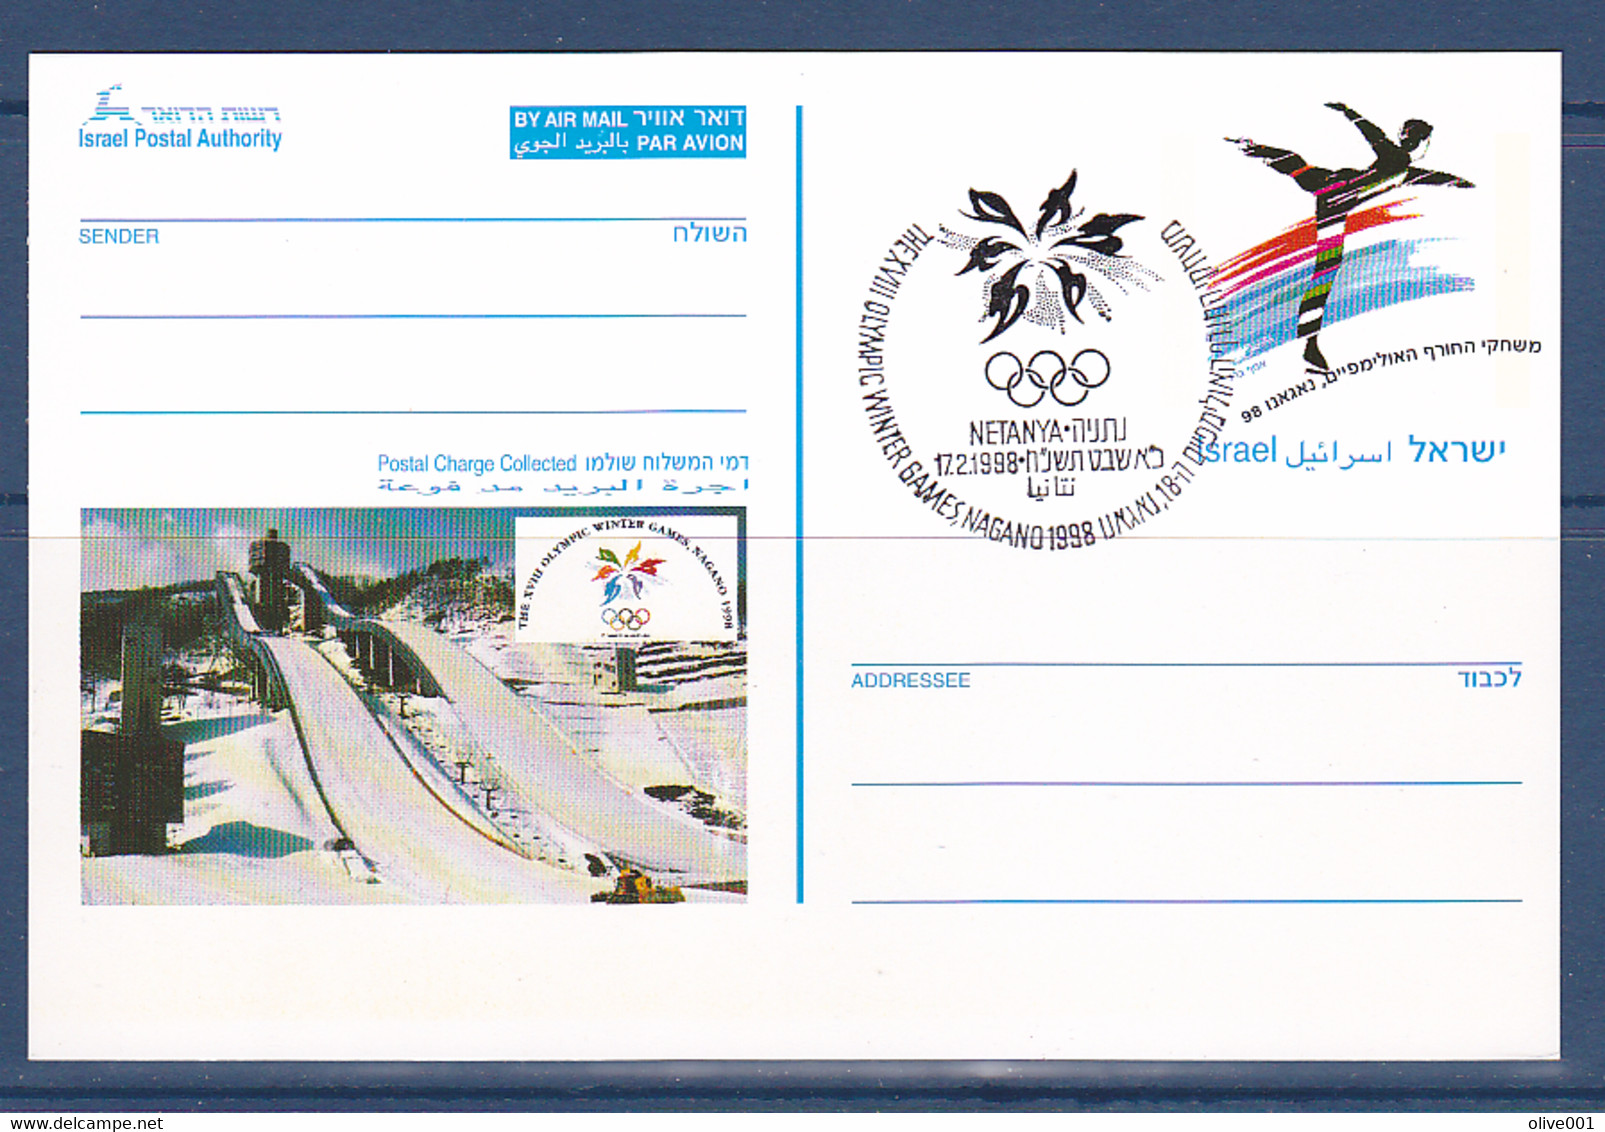 Timbres D'Israel, Jeux Olympique D'hiver De Nagano Entier Postal Oblitération Olympique Du 18/02/1998 Non Circulé  à 50% - Invierno 1998: Nagano